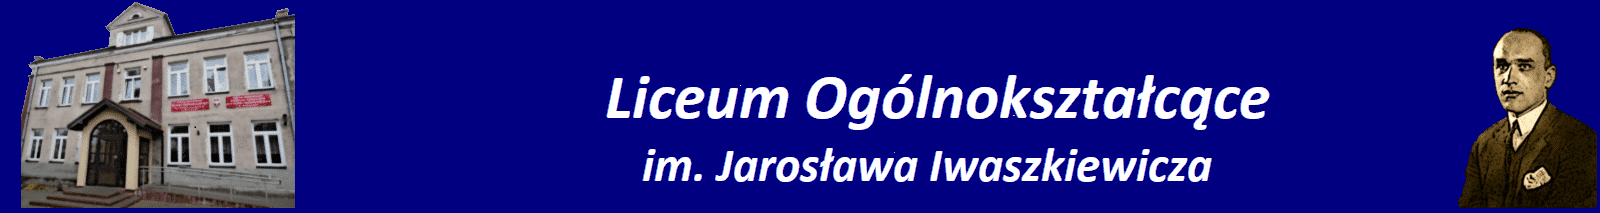 Liceum Ogólnokształcące im. Jarosława Iwaszkiewiczaw Nasielsku